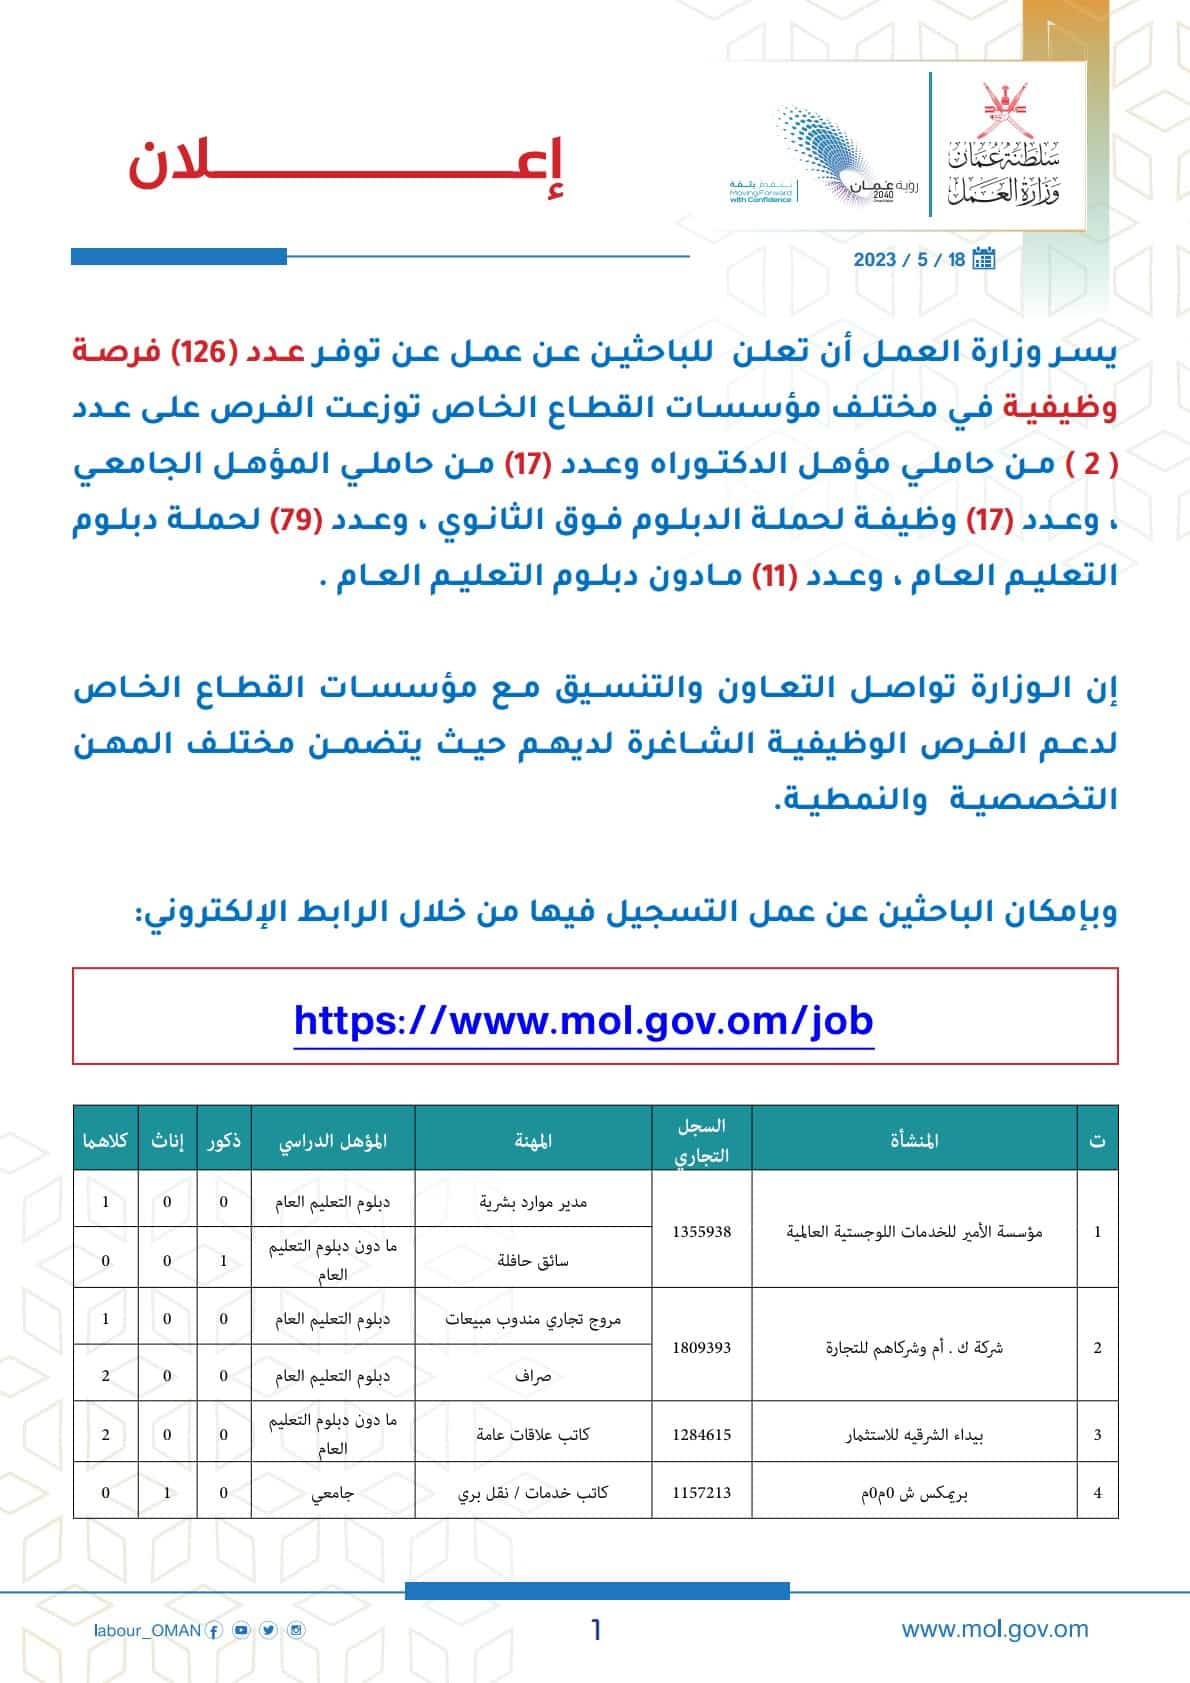 وظائف وزارة العمل سلطنة عمان اليوم 2023 لمختلف التخصصات والمؤهلات ''jobs in OmaN''